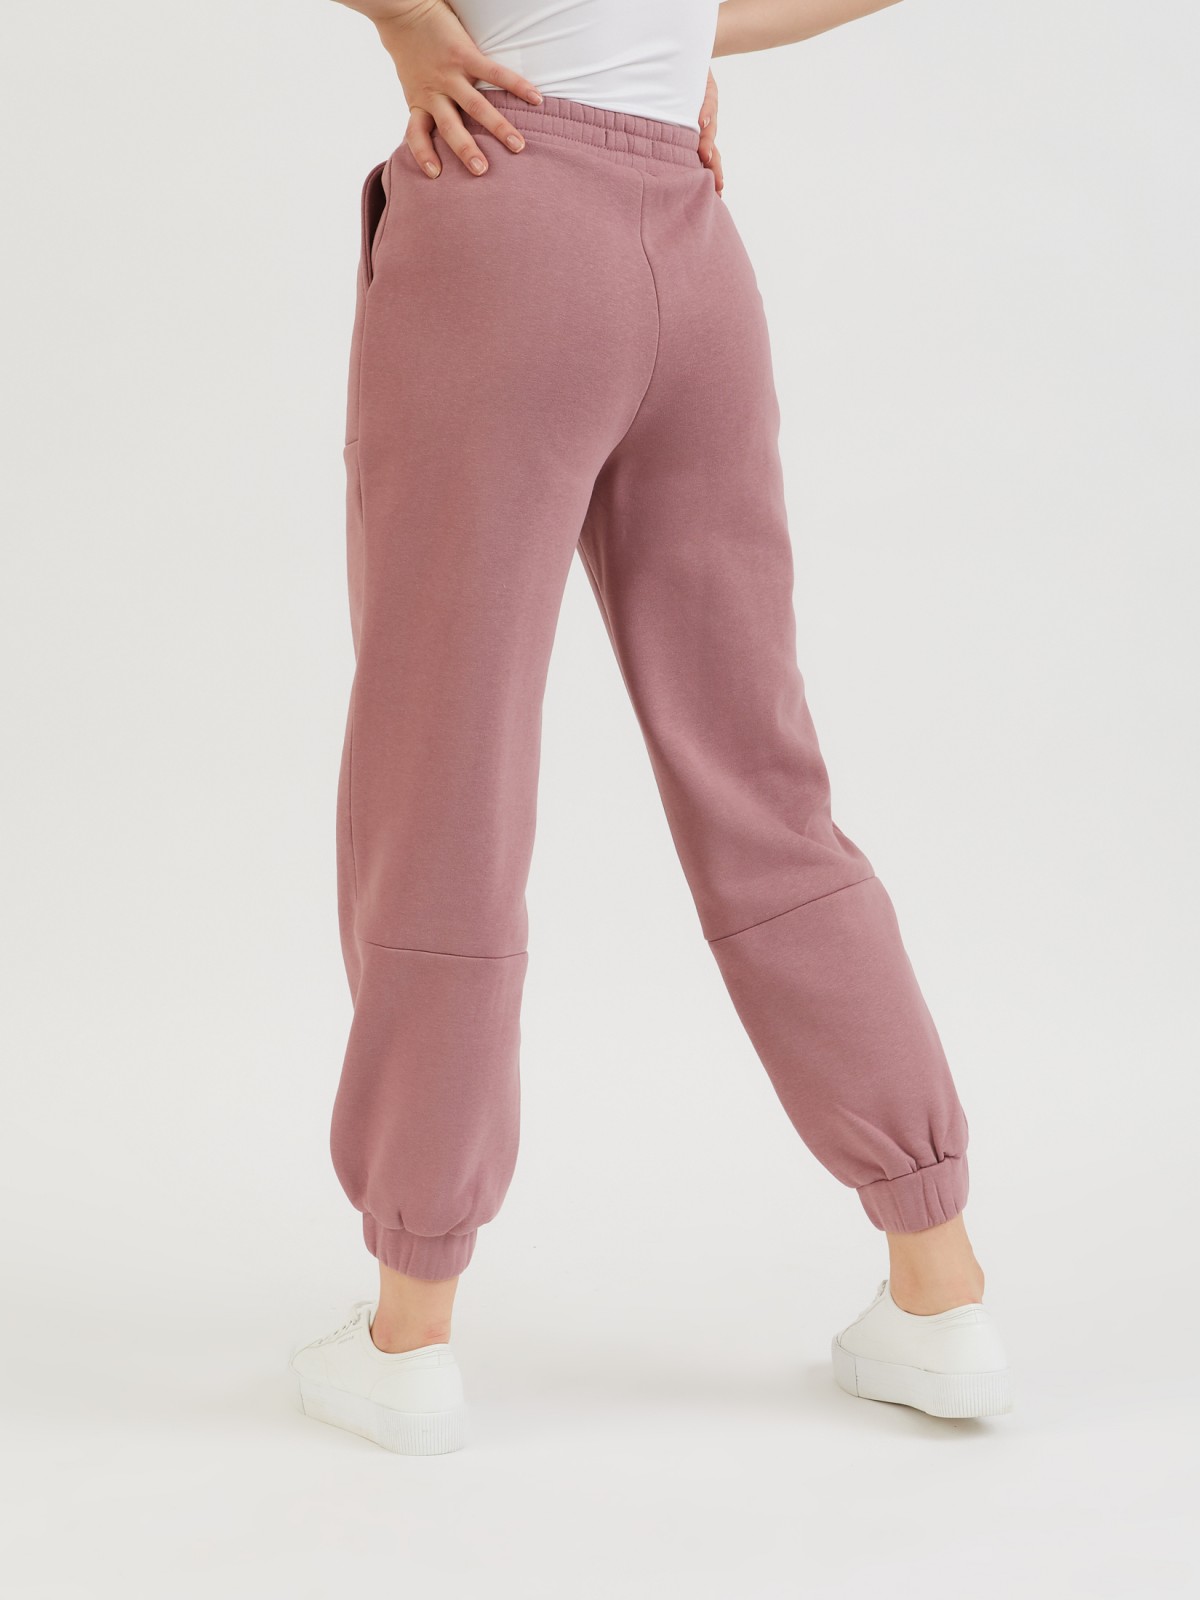 Трикотажные брюки-джоггеры zolla 22132732L321, цвет розовый, размер XS - фото 2